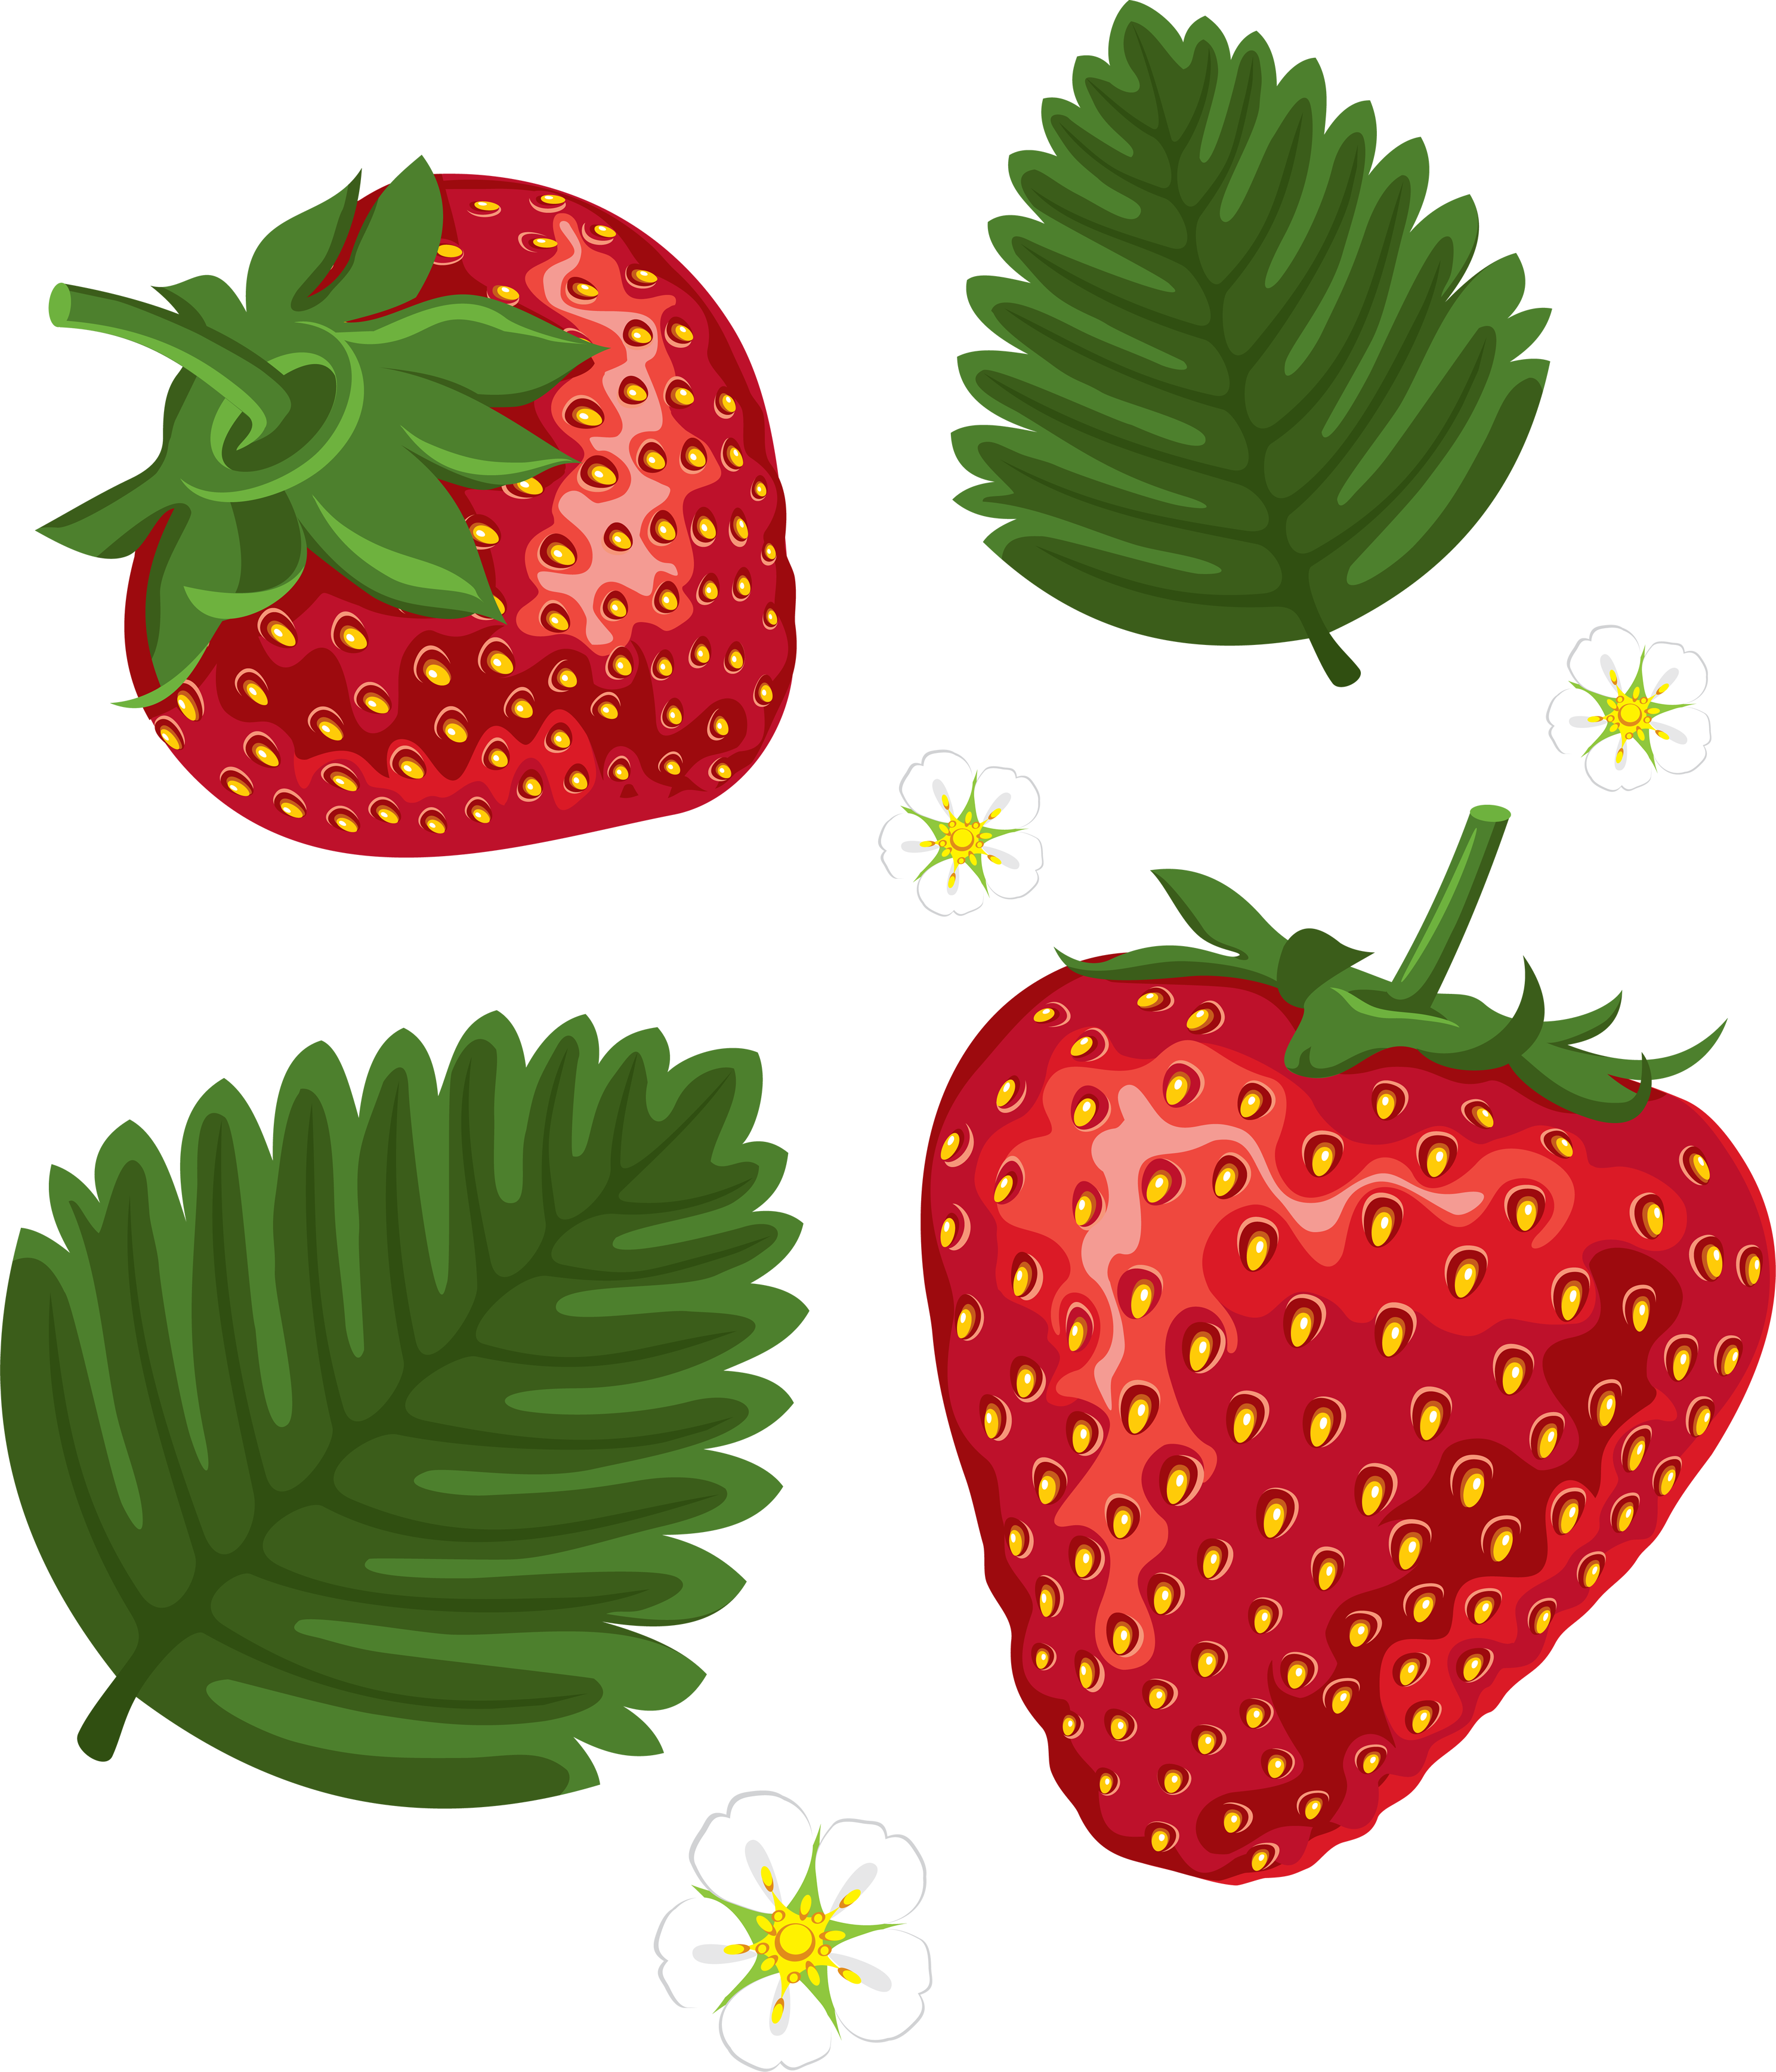 Erdbeere und grüne Blätter